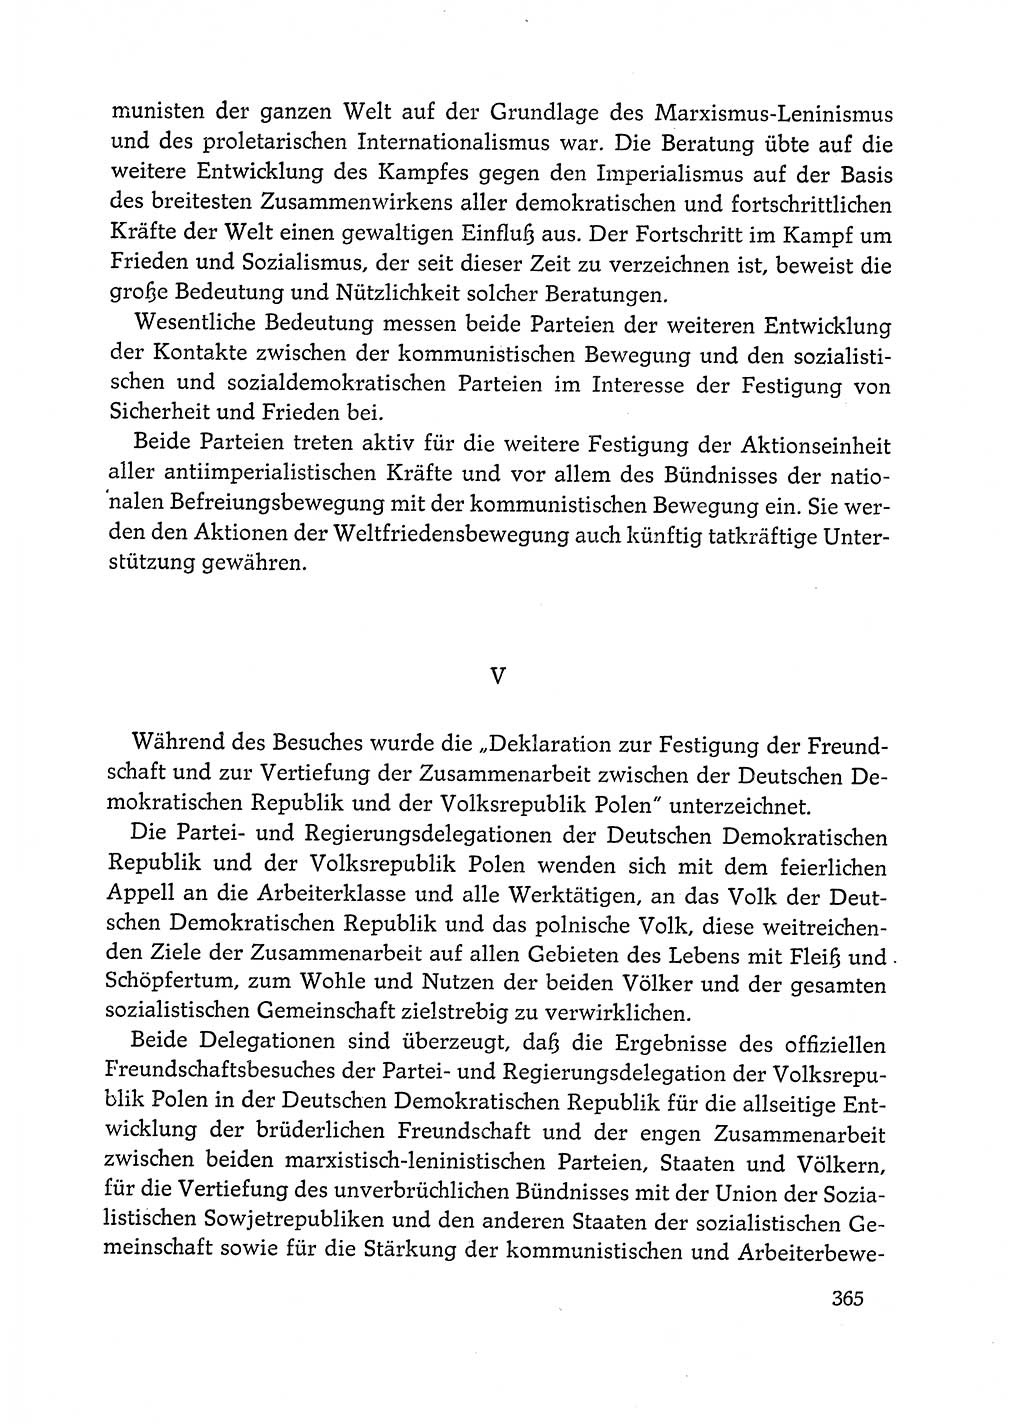 Dokumente der Sozialistischen Einheitspartei Deutschlands (SED) [Deutsche Demokratische Republik (DDR)] 1972-1973, Seite 365 (Dok. SED DDR 1972-1973, S. 365)